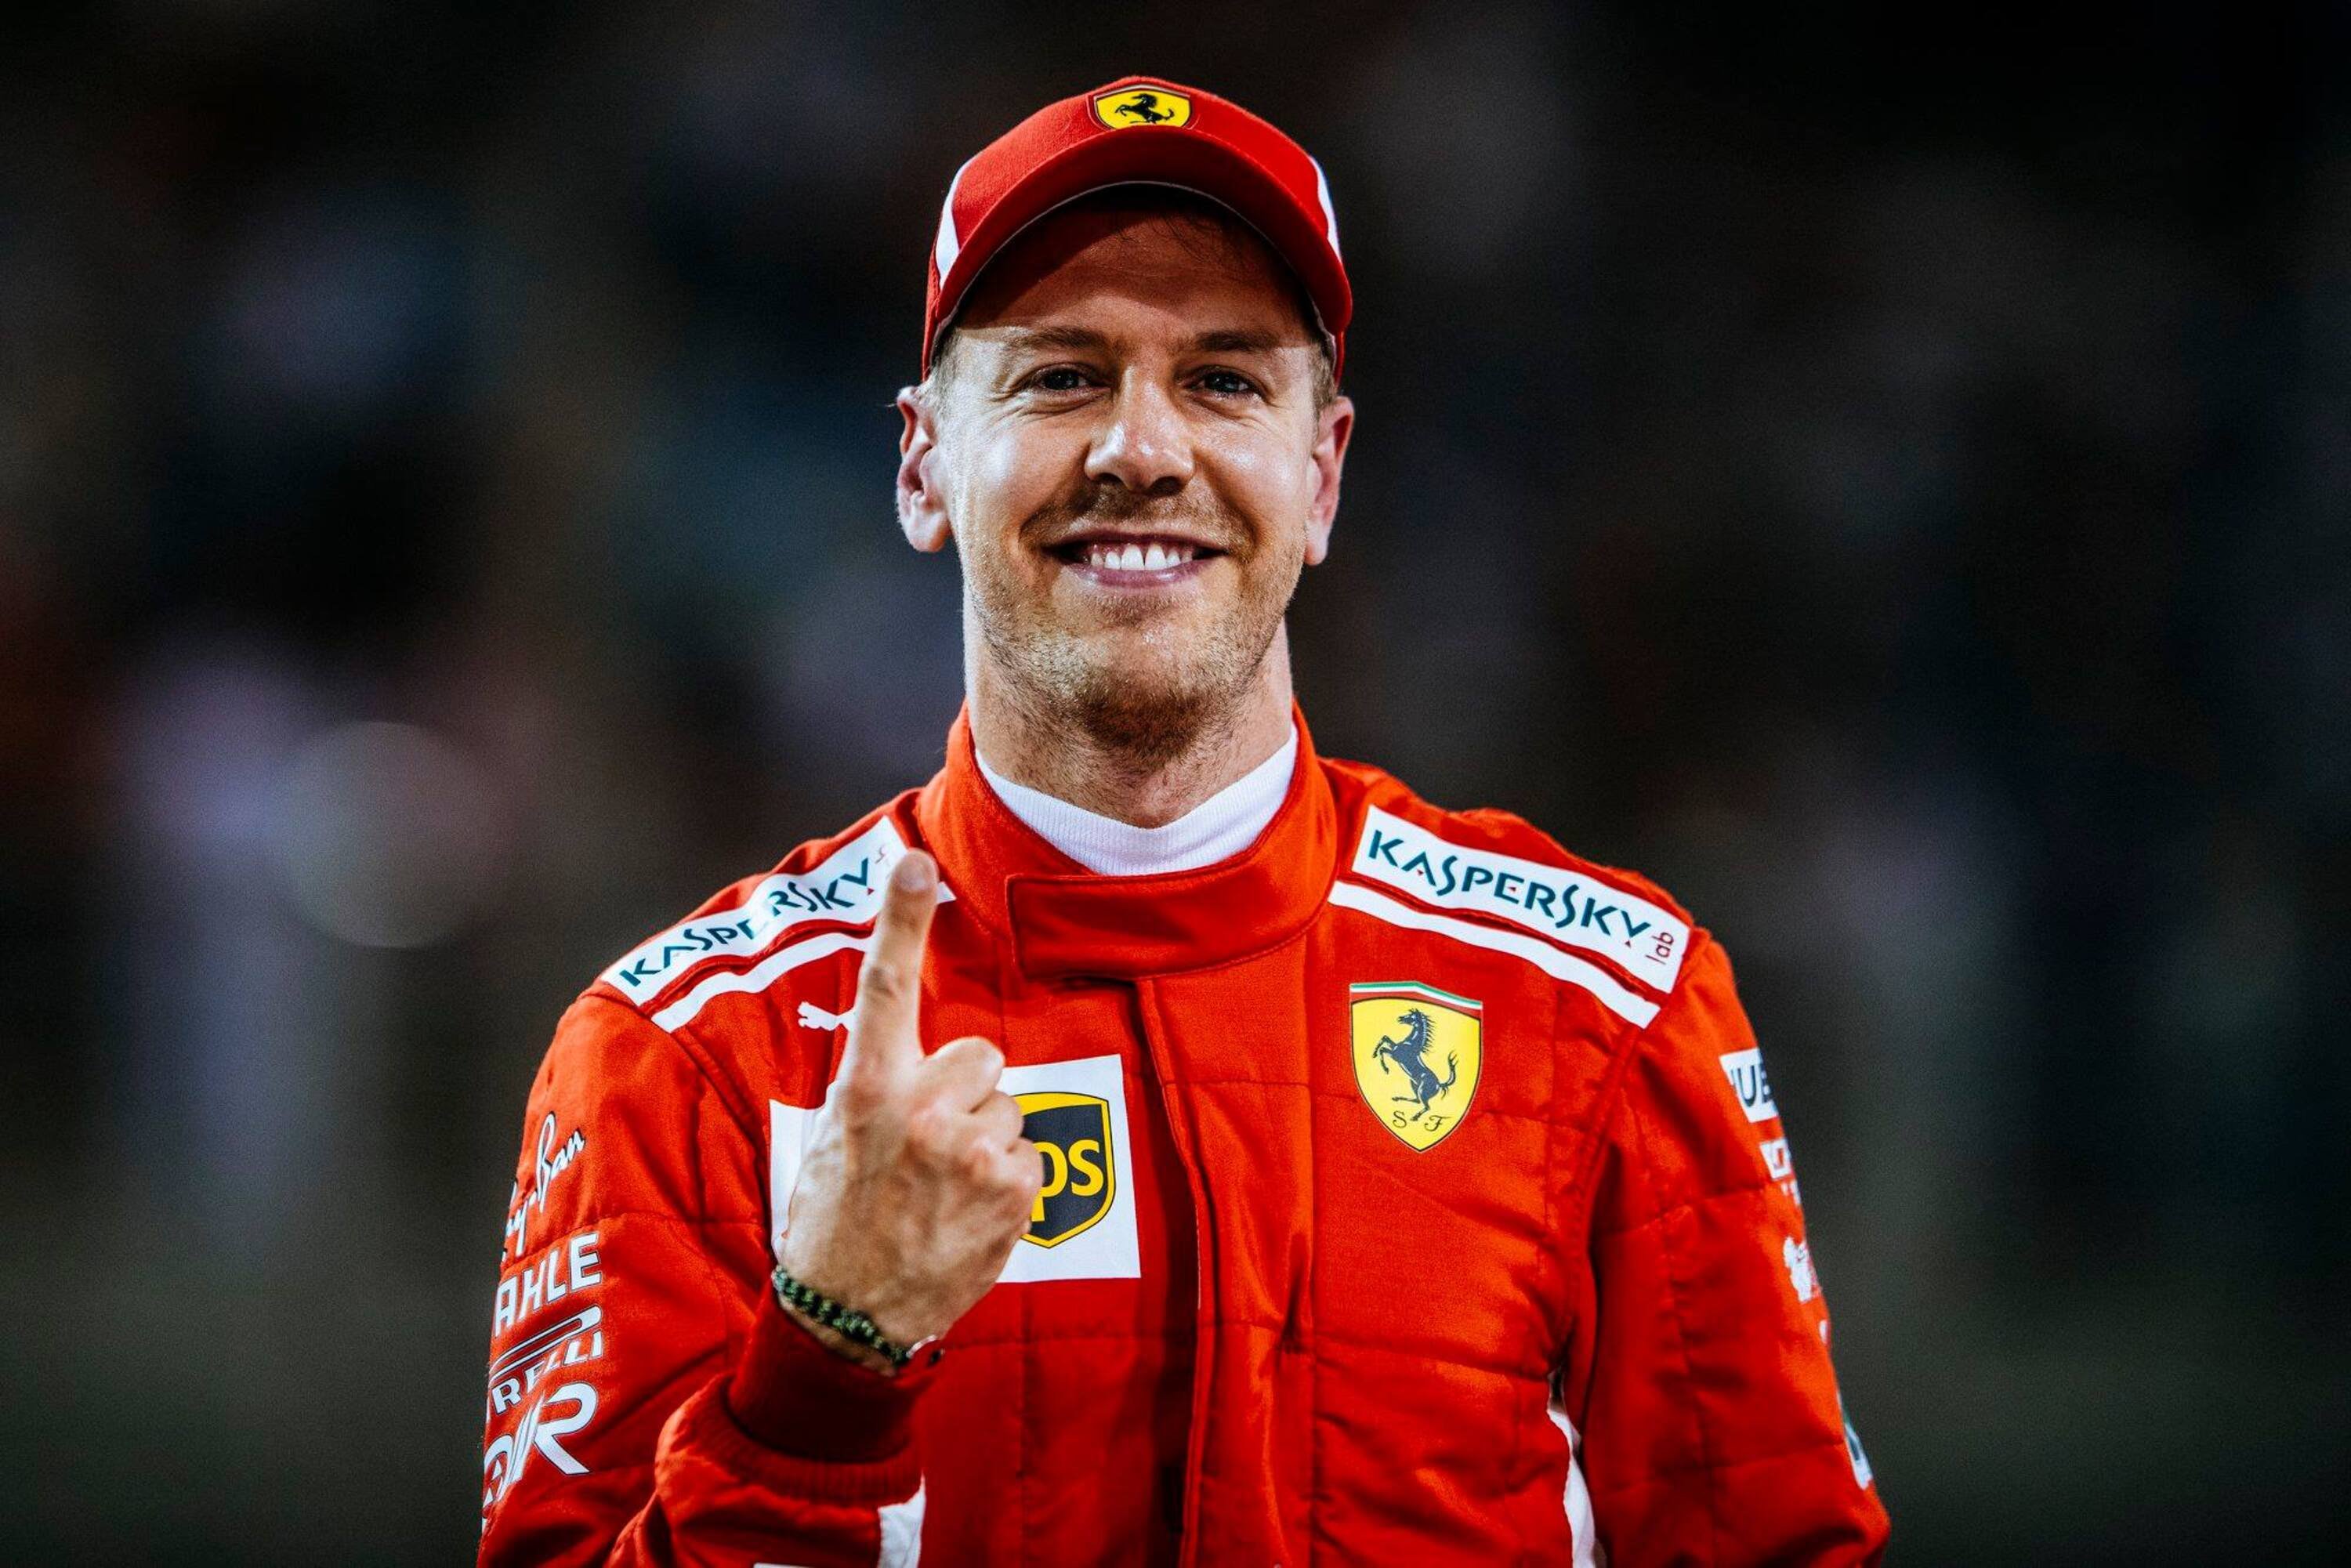 F1, GP Bahrain 2018: Vettel, vittoria sofferta